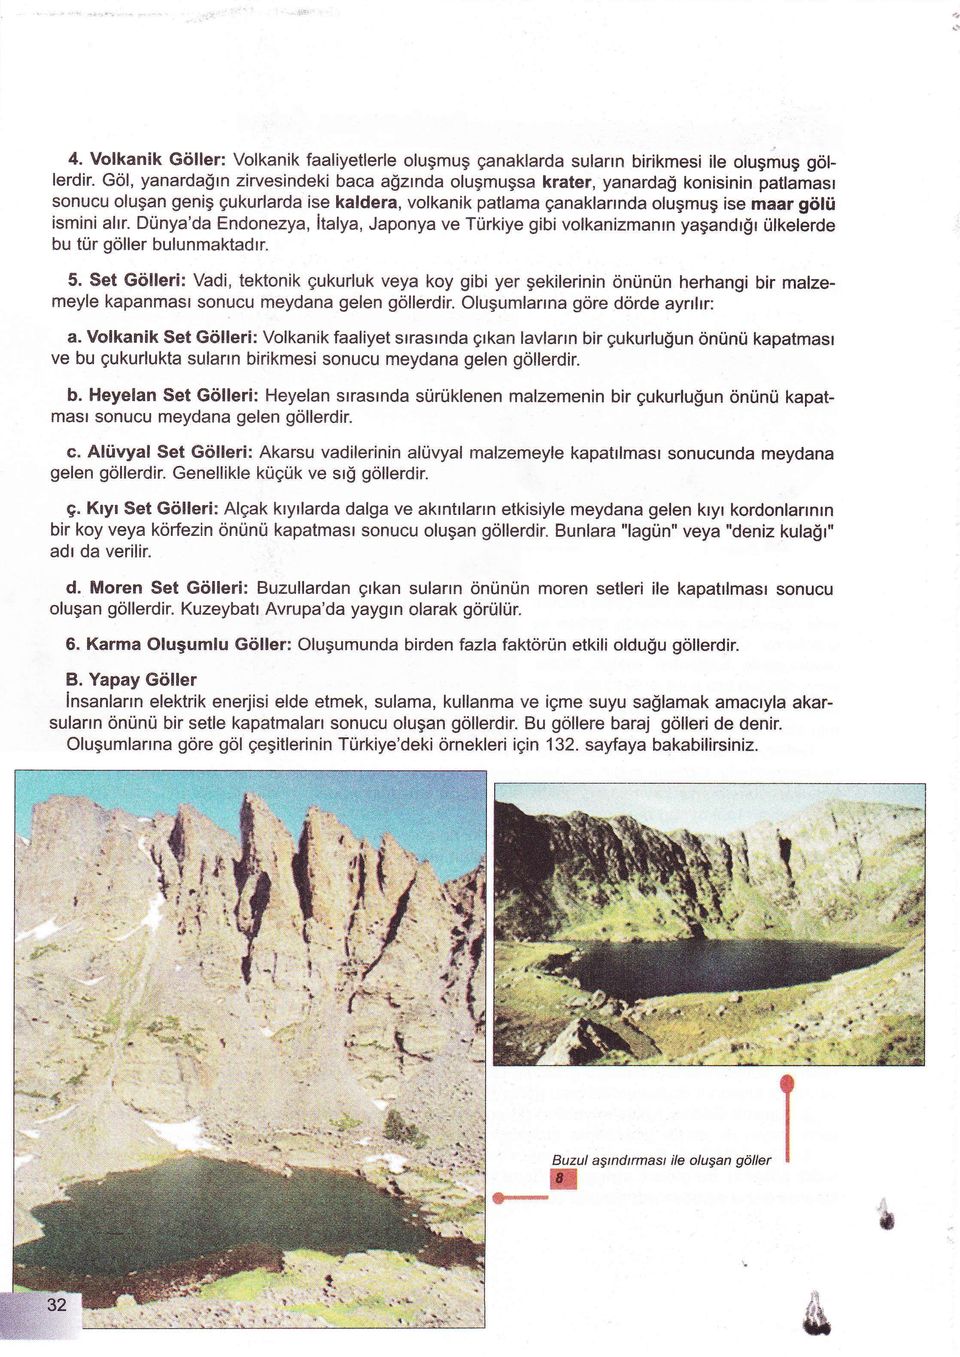 Dünya'da Endonezya, İtalya, Japonya ve Türkiye gibi volkanizmanın yaşandığı ülkelerde bu tür gö ler bulunmaktadır. 5.